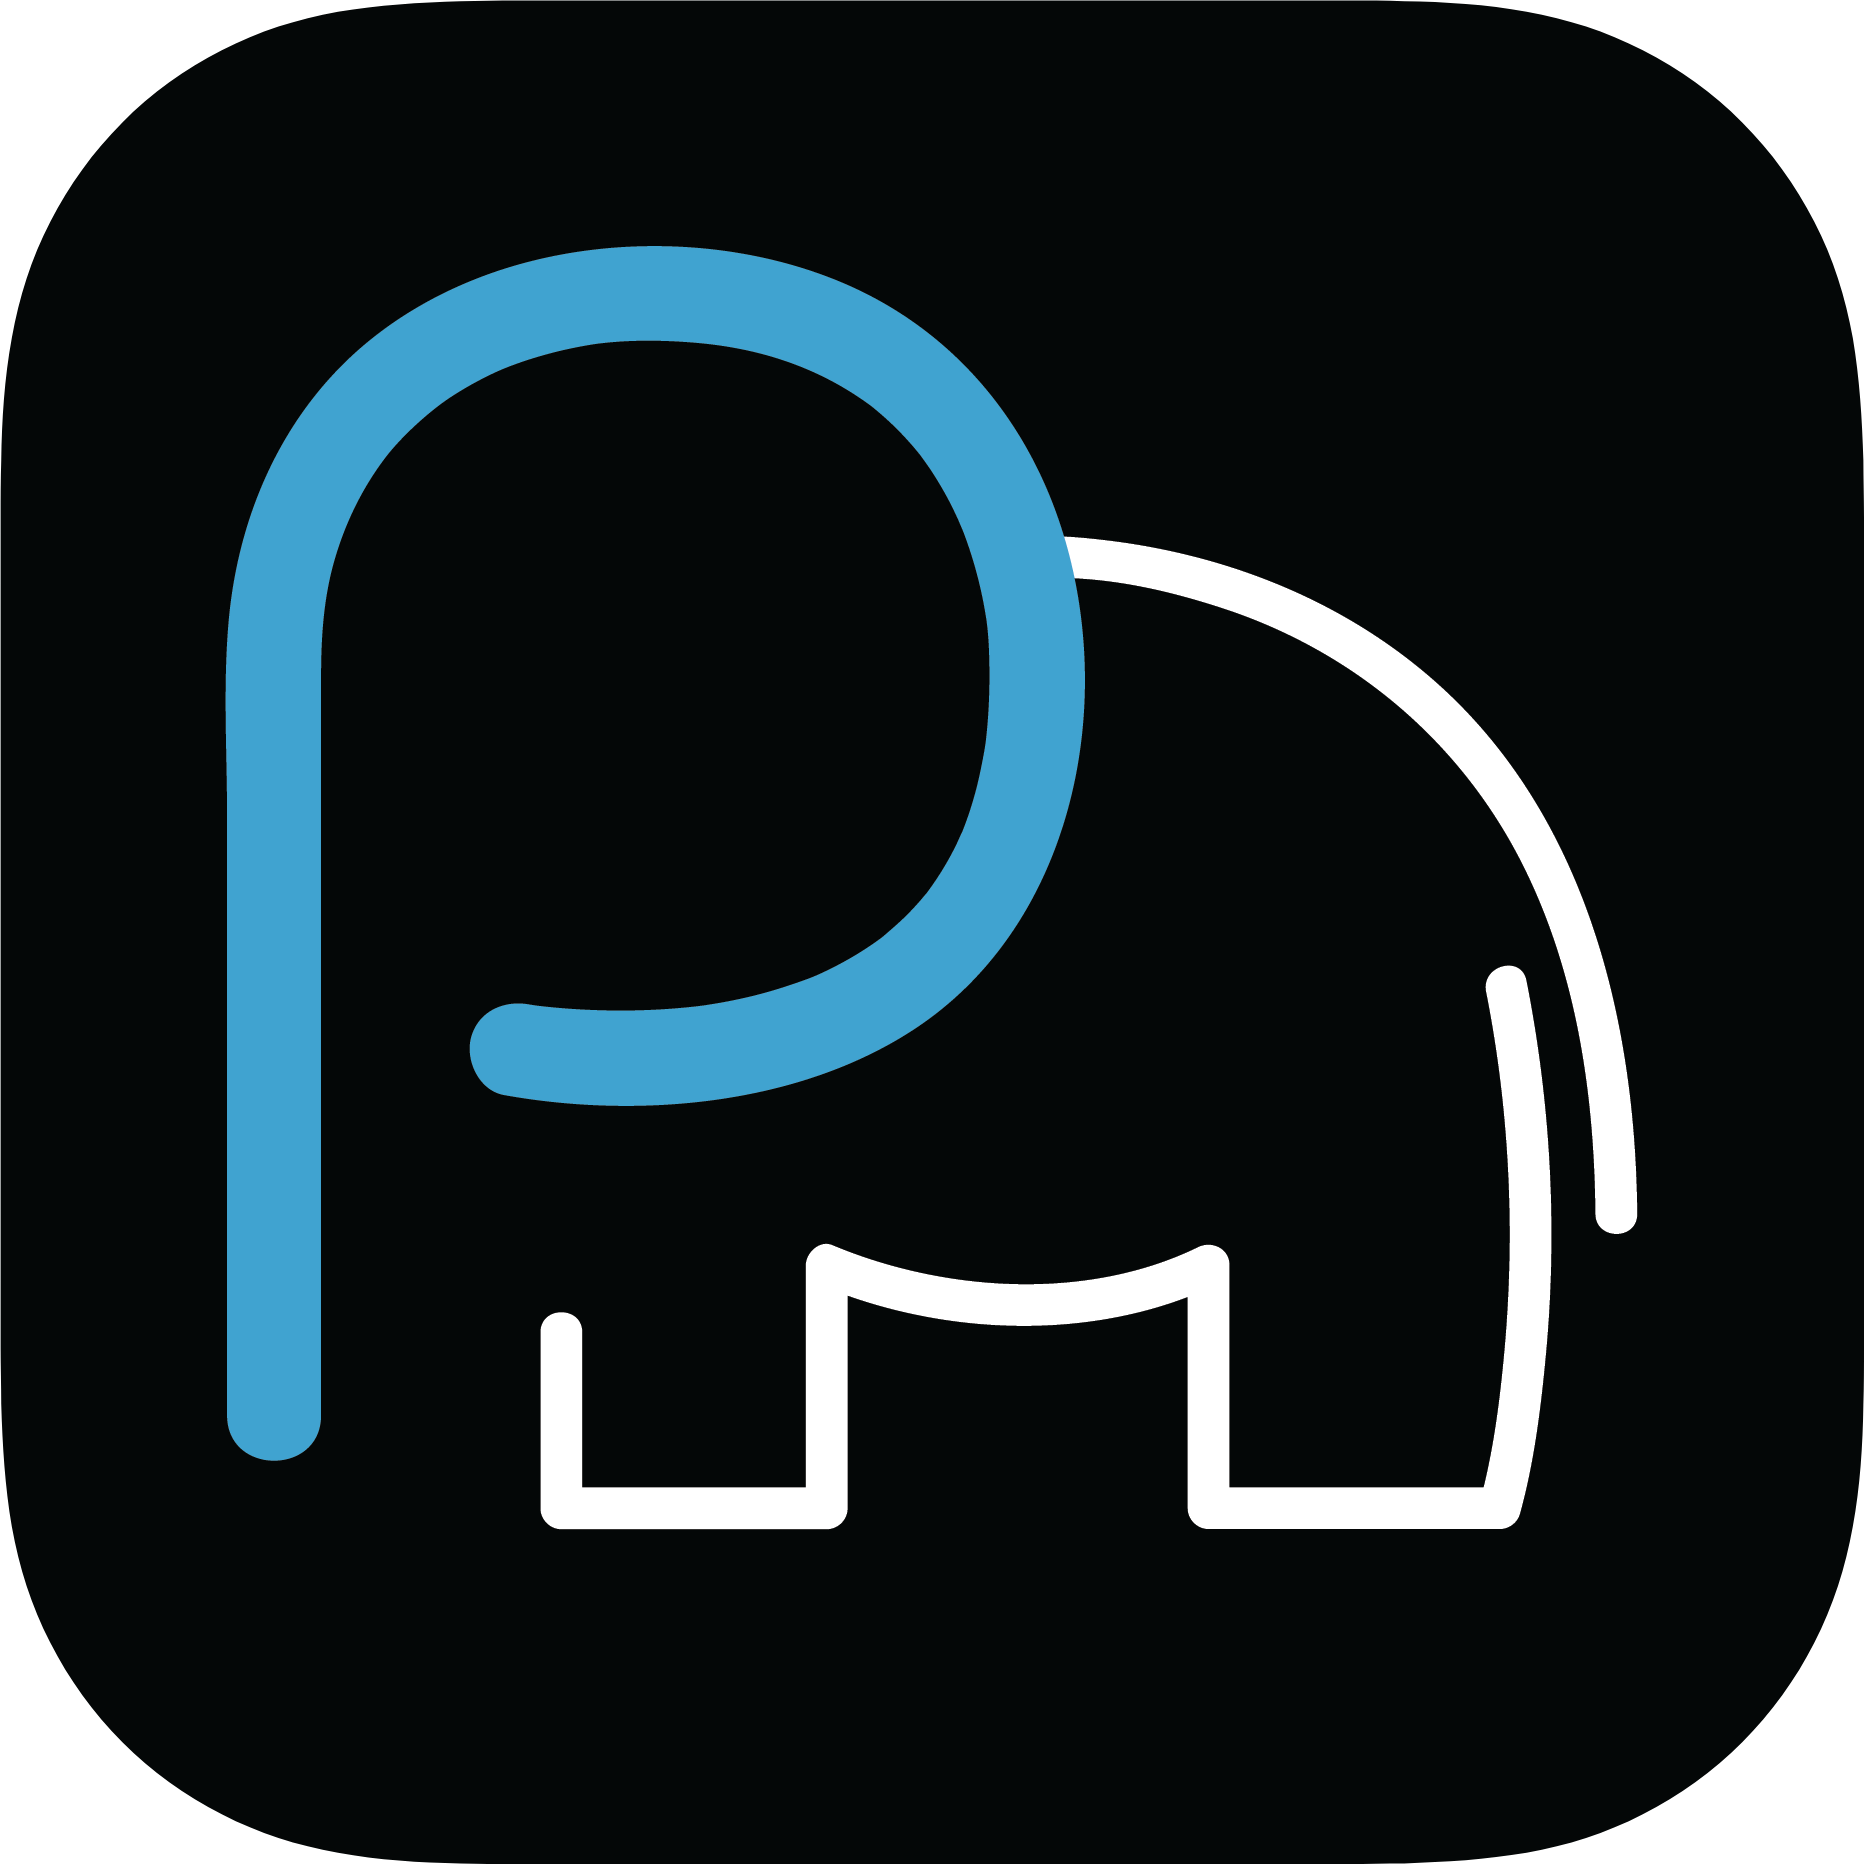 Parade elephant blue logo